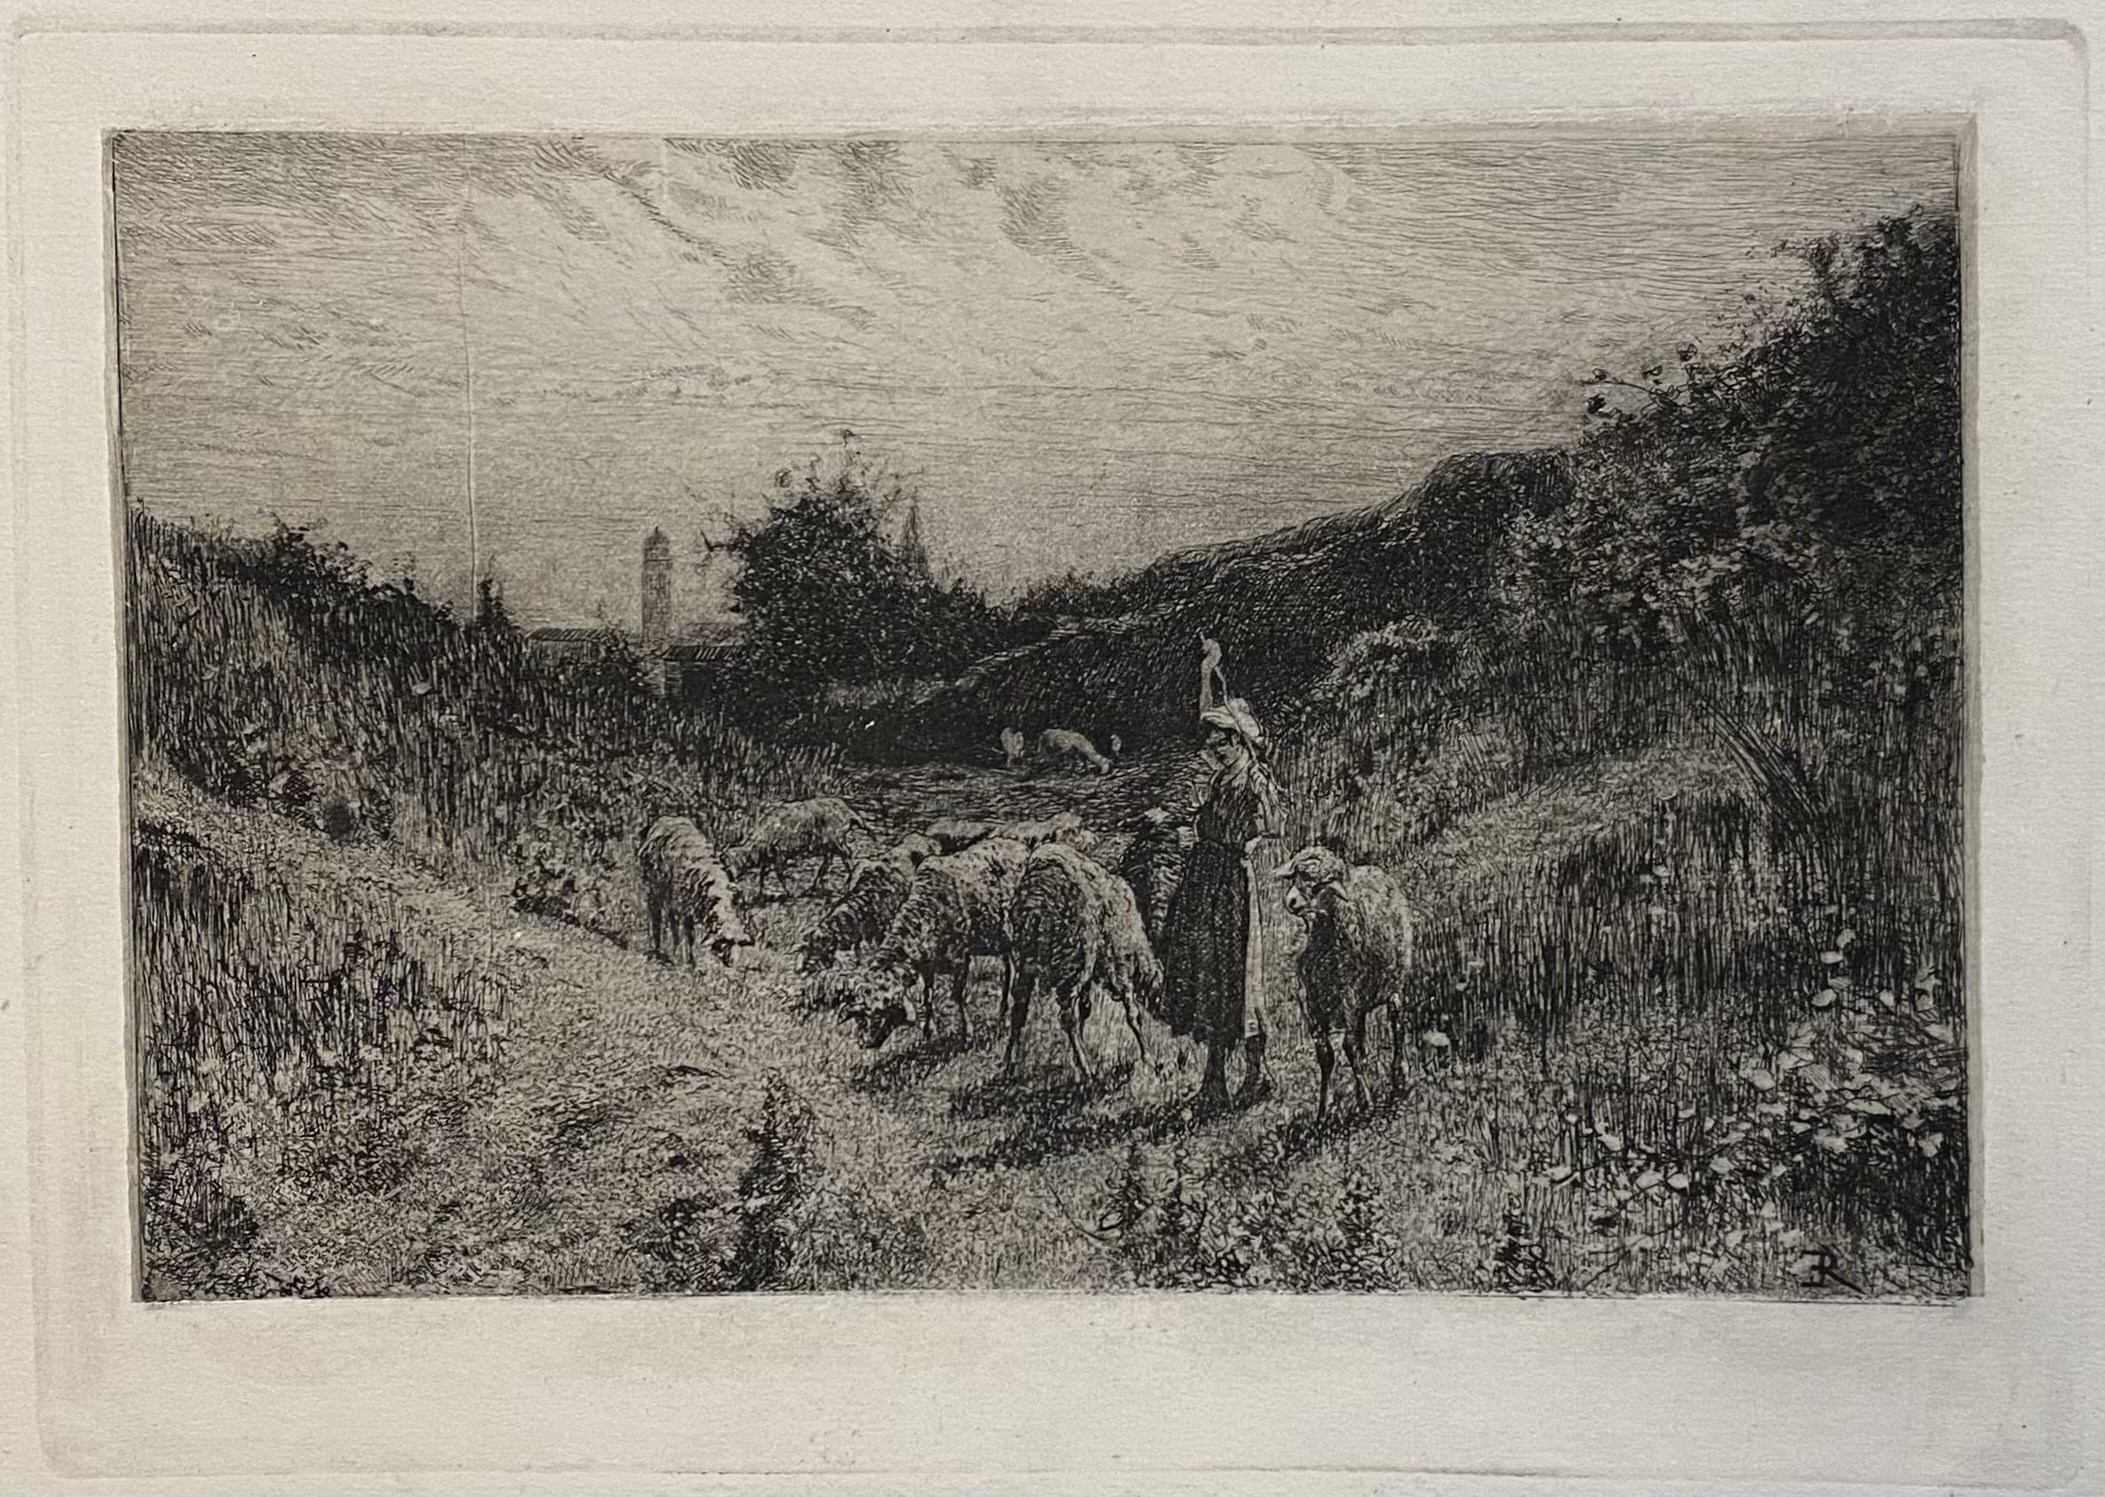 Presso Volpiano, 1870